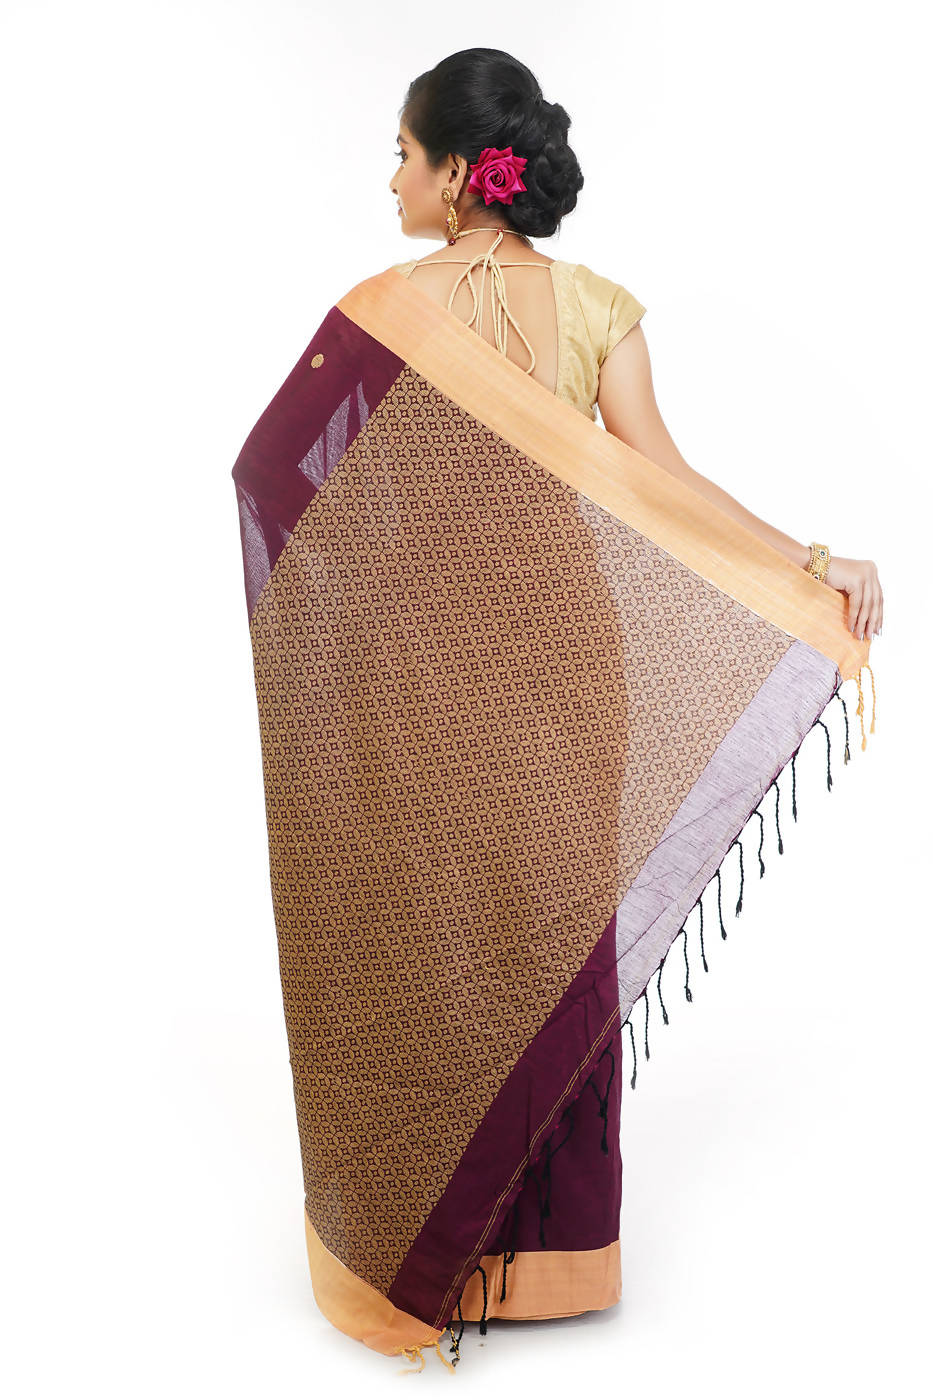 Handloom bengal cotton saree